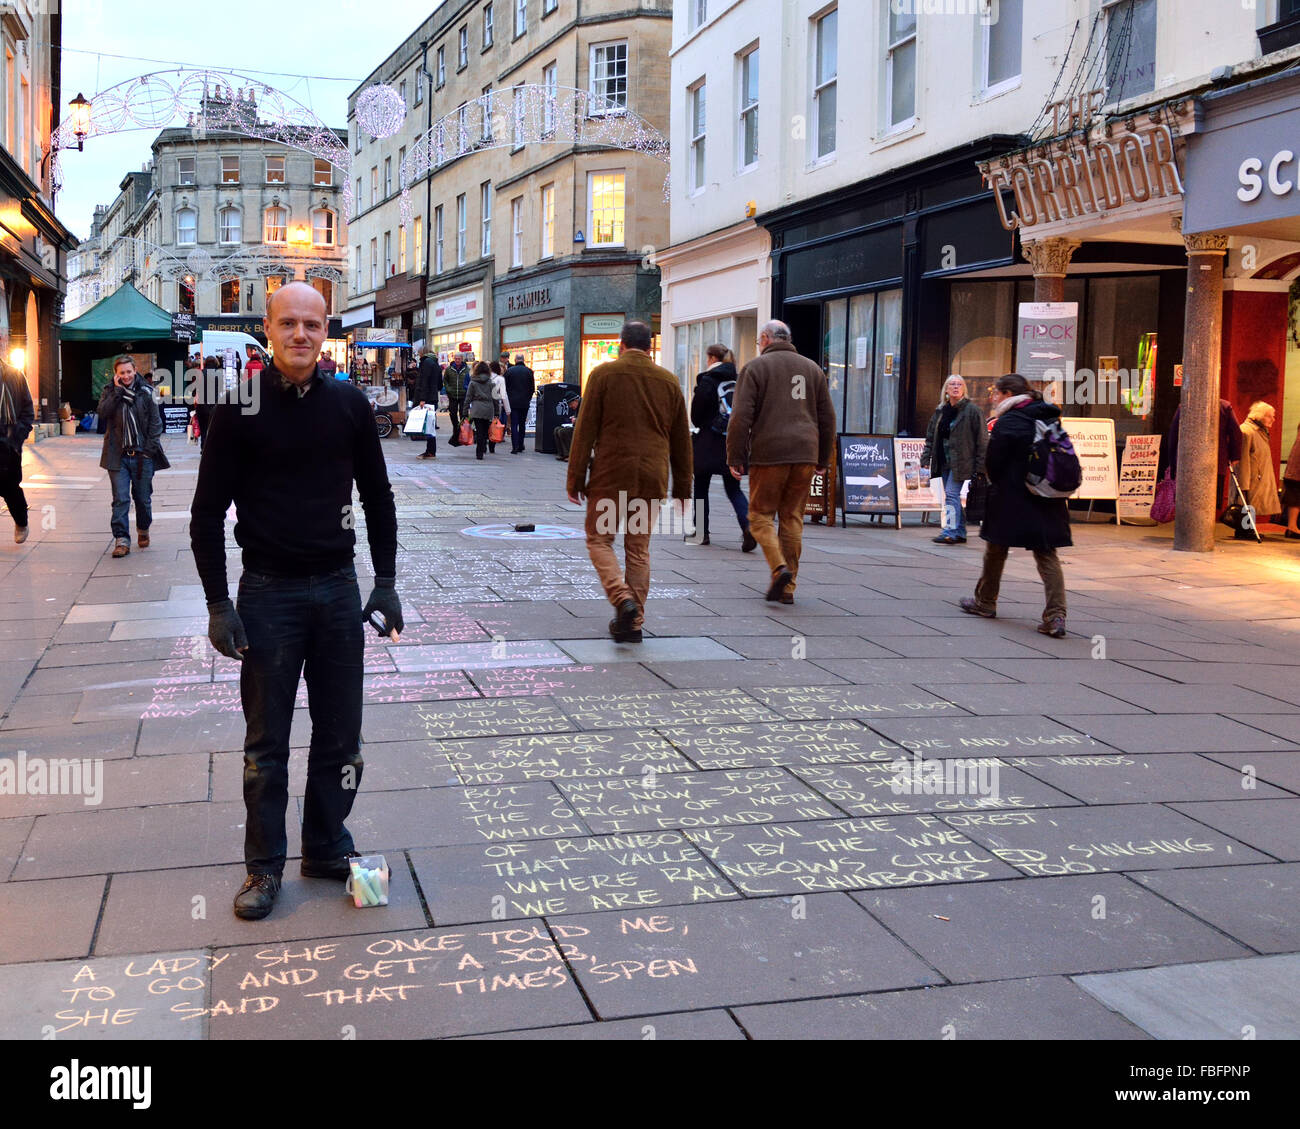 BATH, Großbritannien - 16. Dezember 2014 der Bürgersteig Dichter. Ein Künstler teilt sein Werk in die UNESCO-Stadt Bath Stockfoto